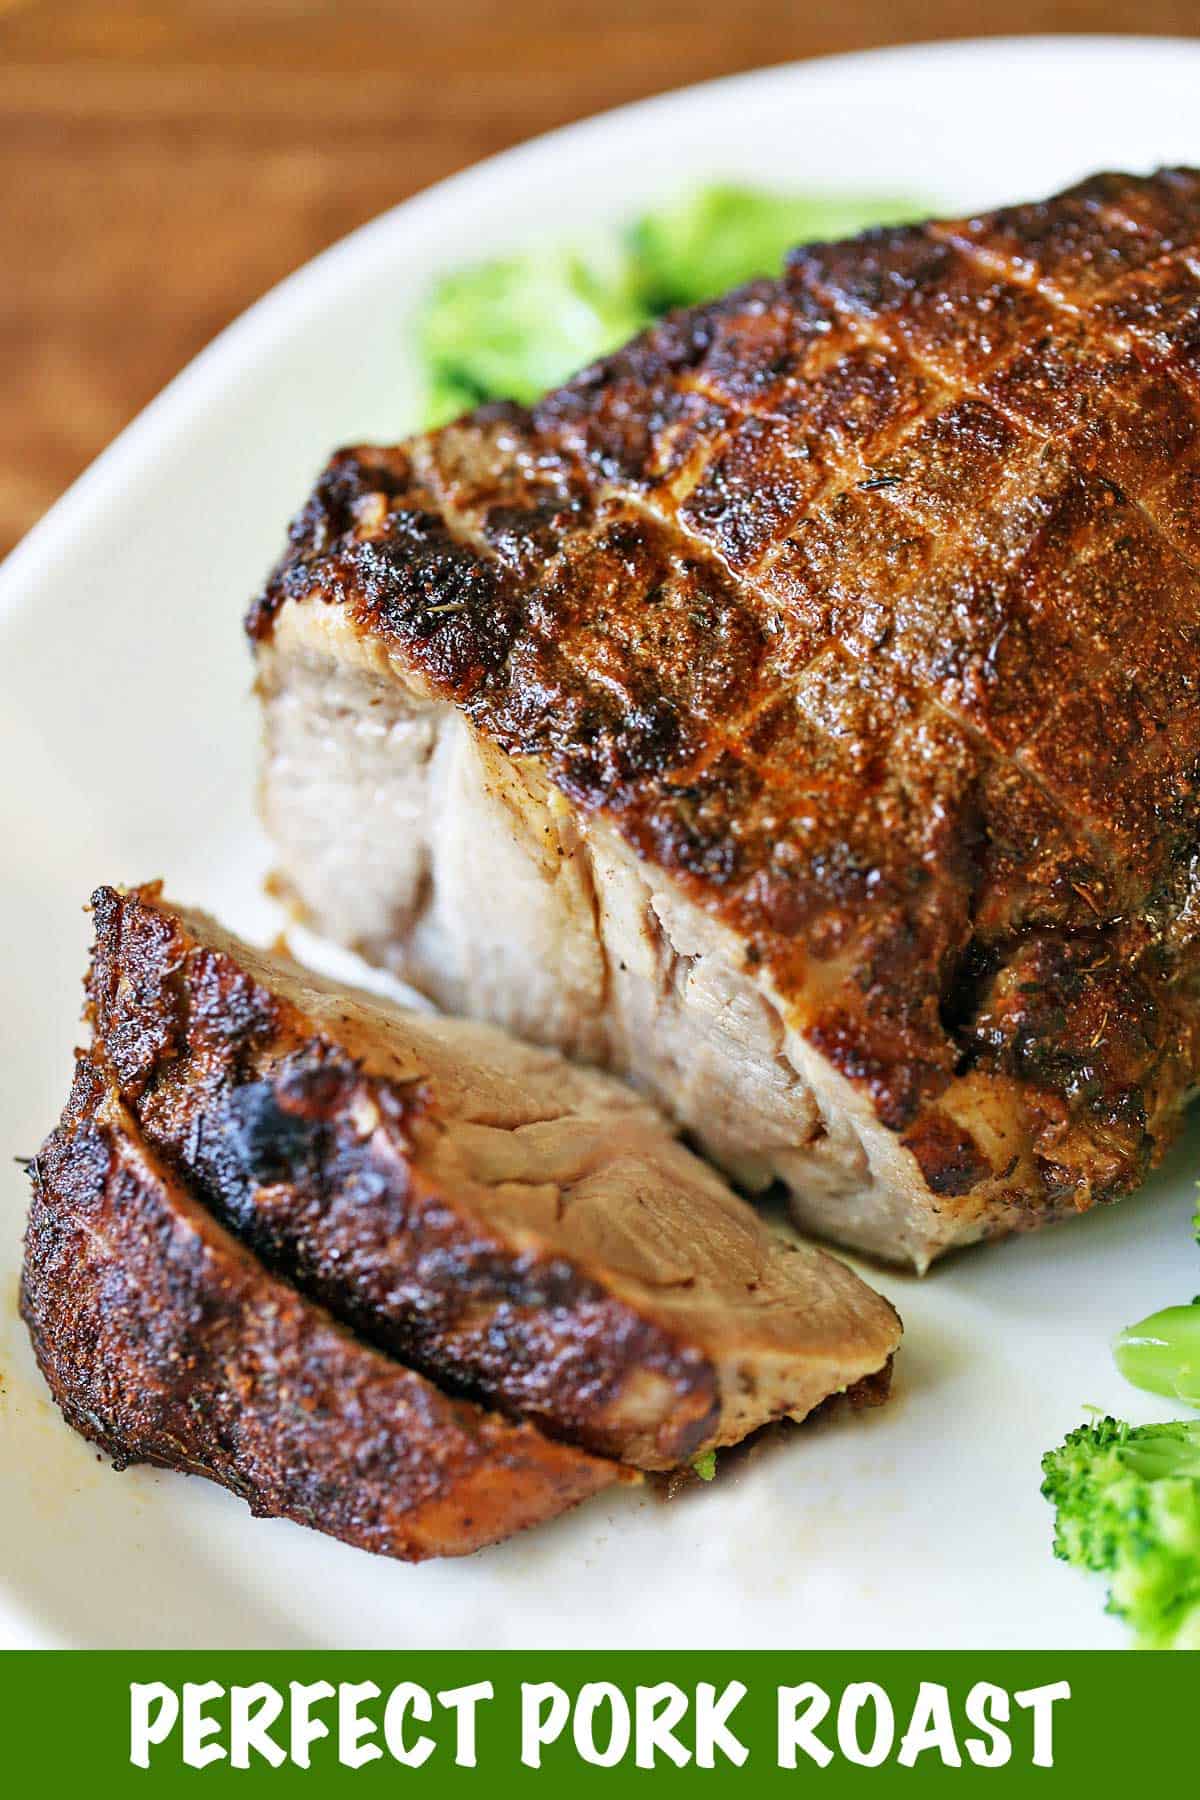 Oven-baked boneless pork roast served on a white platter with veggies. 